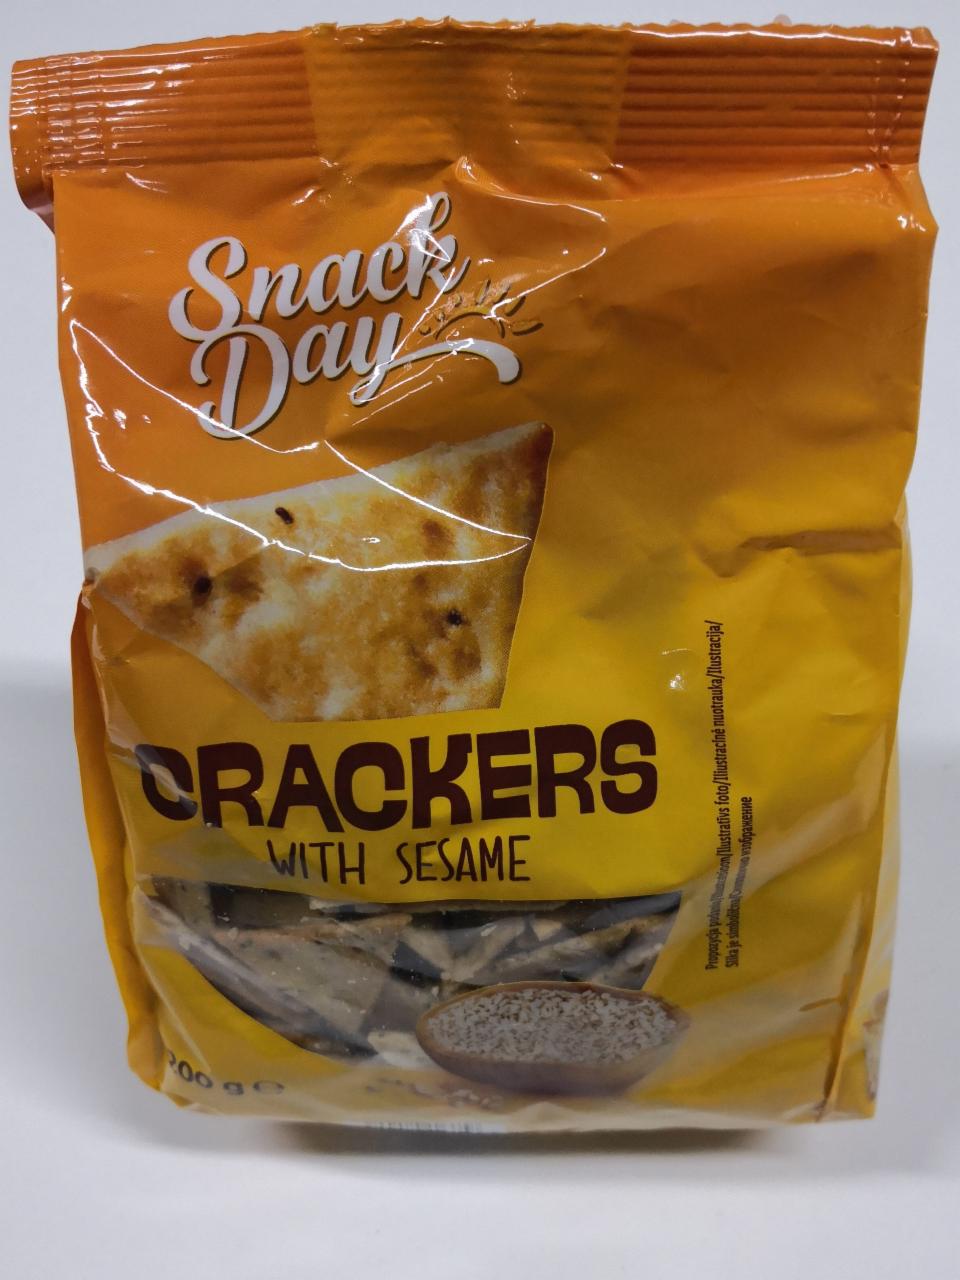 Zdjęcia - Crackers with sesame [Snack Day] 